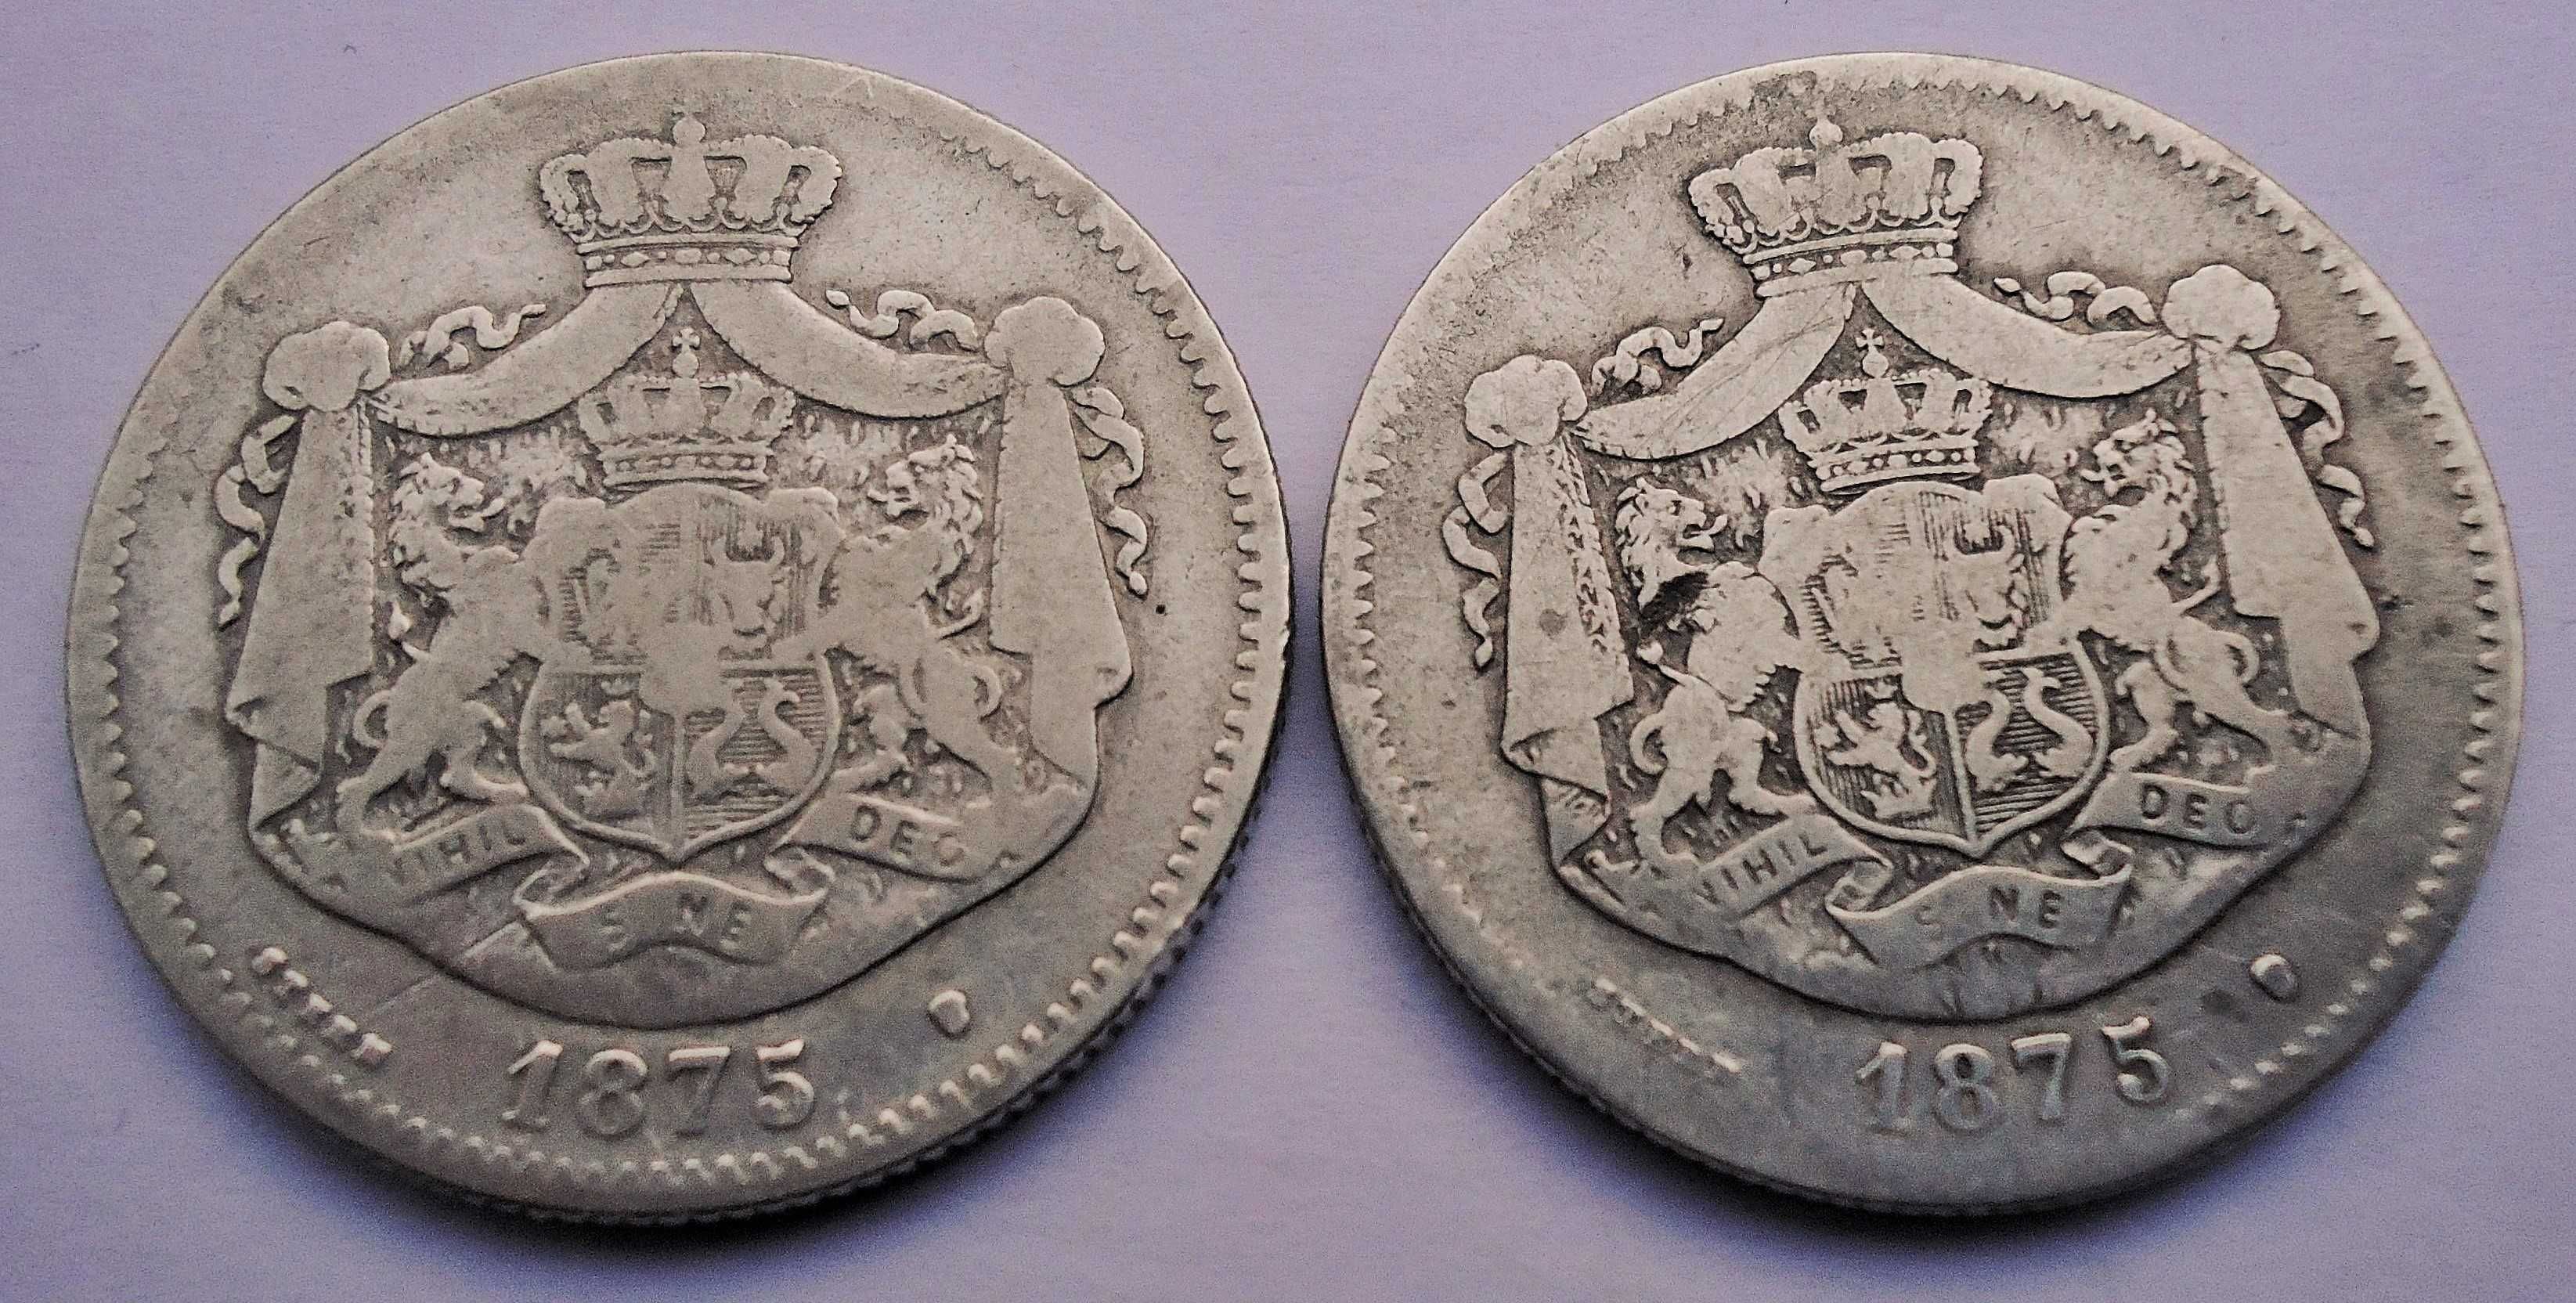 Monede din argint 2 lei 1875 România regele Carol I